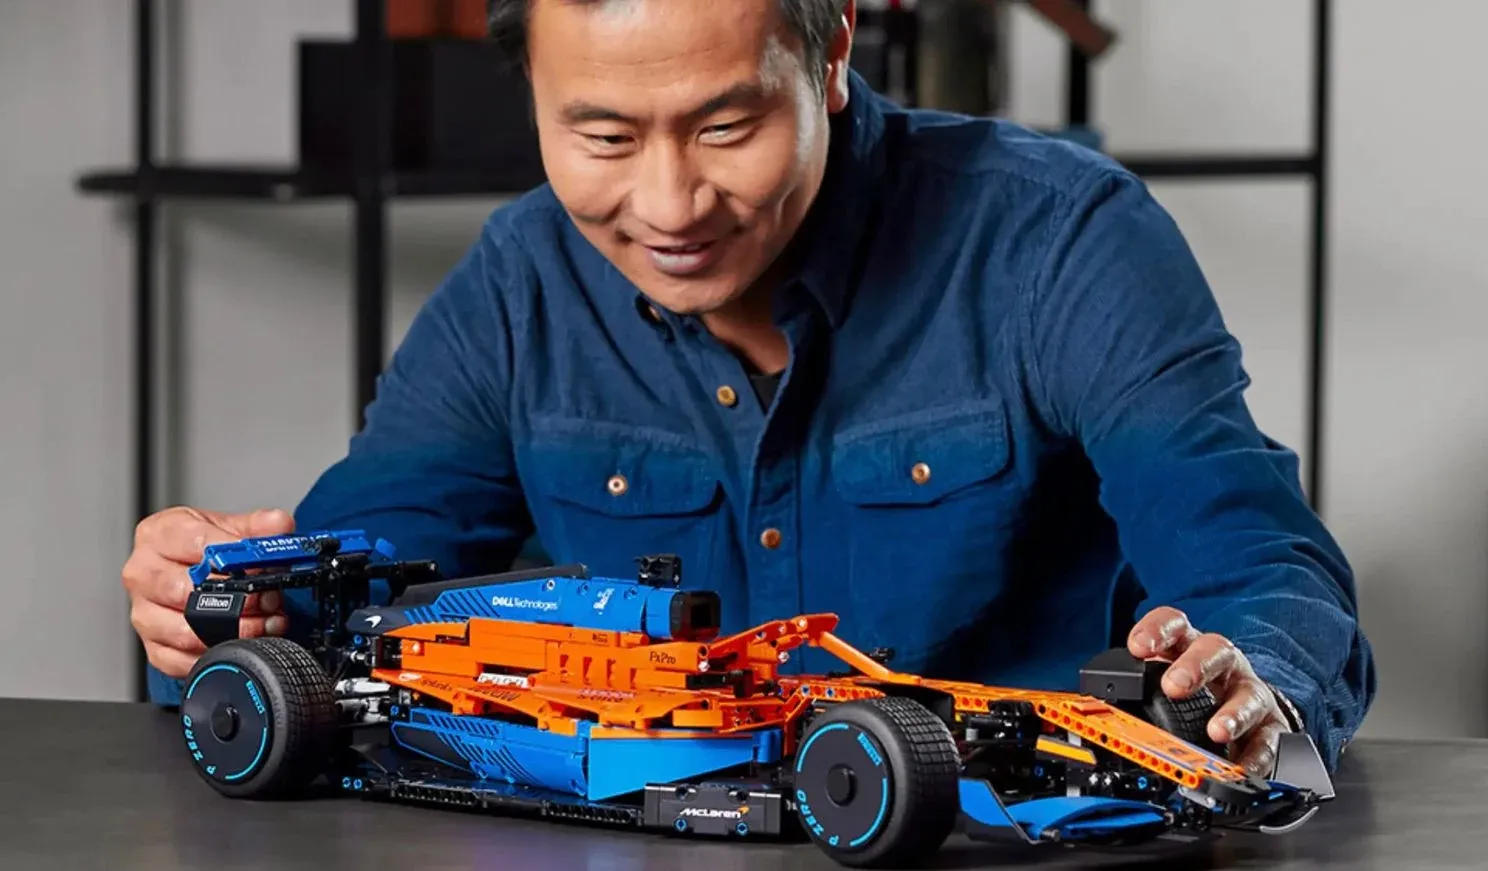 Deze 10 waanzinnige 18+ bouwsets zijn een natte droom voor volwassen LEGO-fans